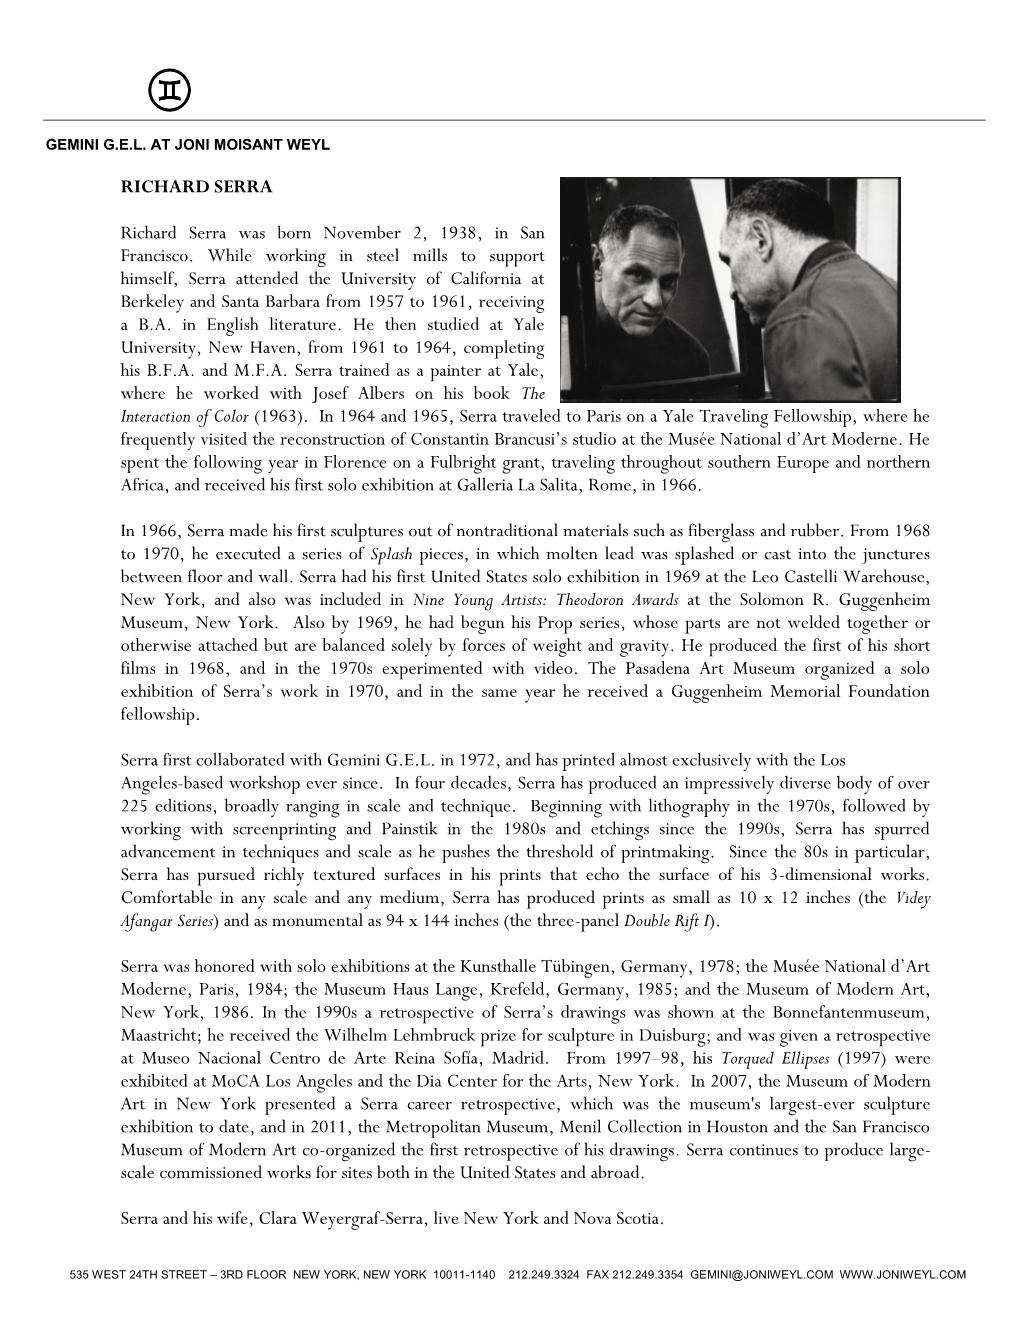 Richard Serra Biography (PDF)